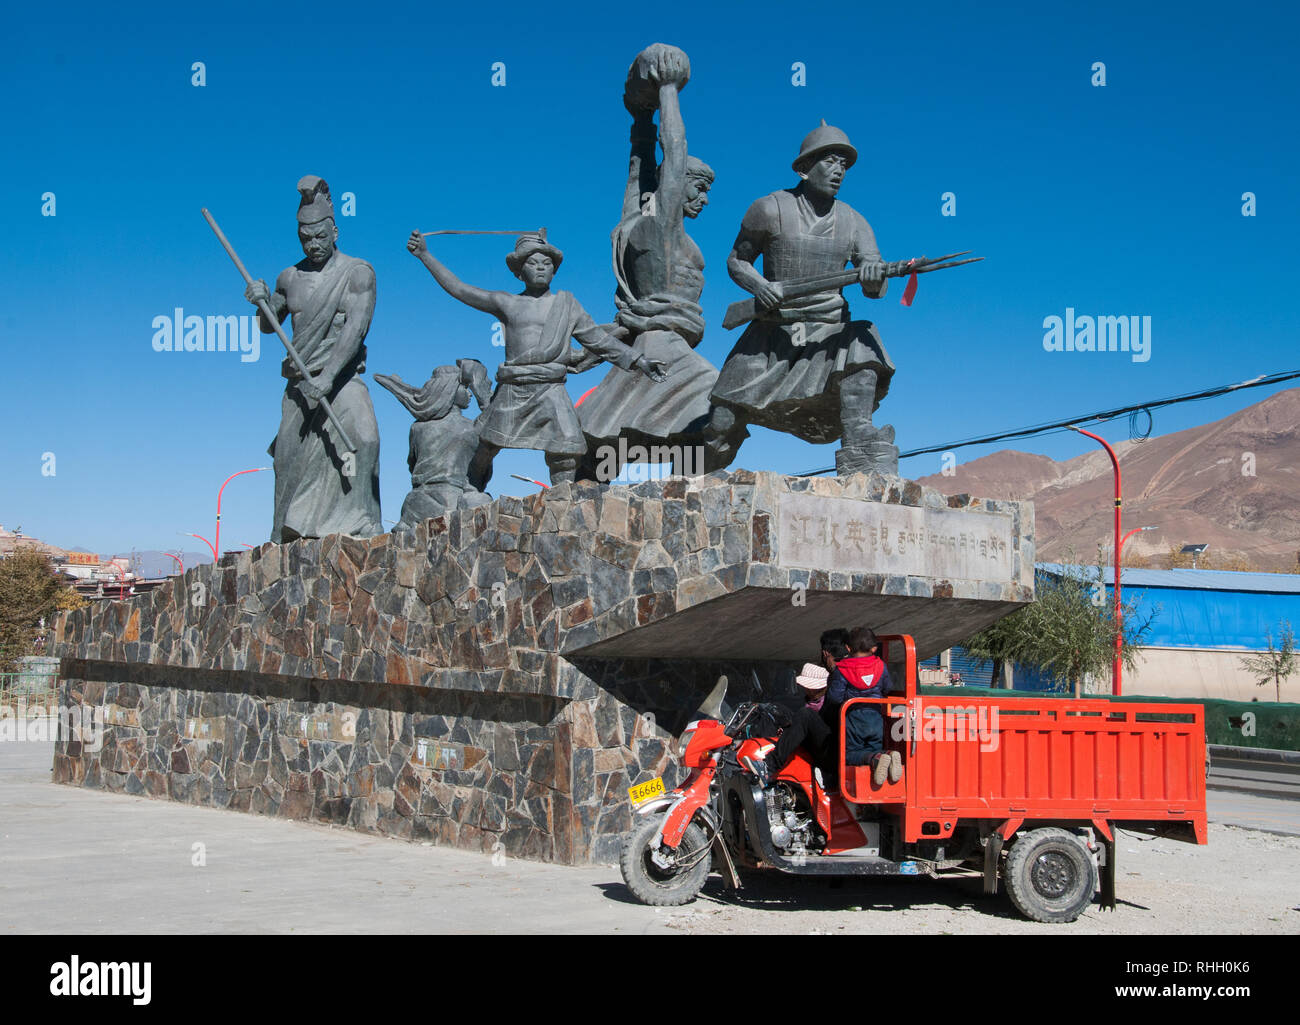 Heldendenkmal Champions diejenigen Tibeter, die die eindringenden Briten Younghusband Expedition 1904 kämpften, Gyantse, Tibet, China Stockfoto